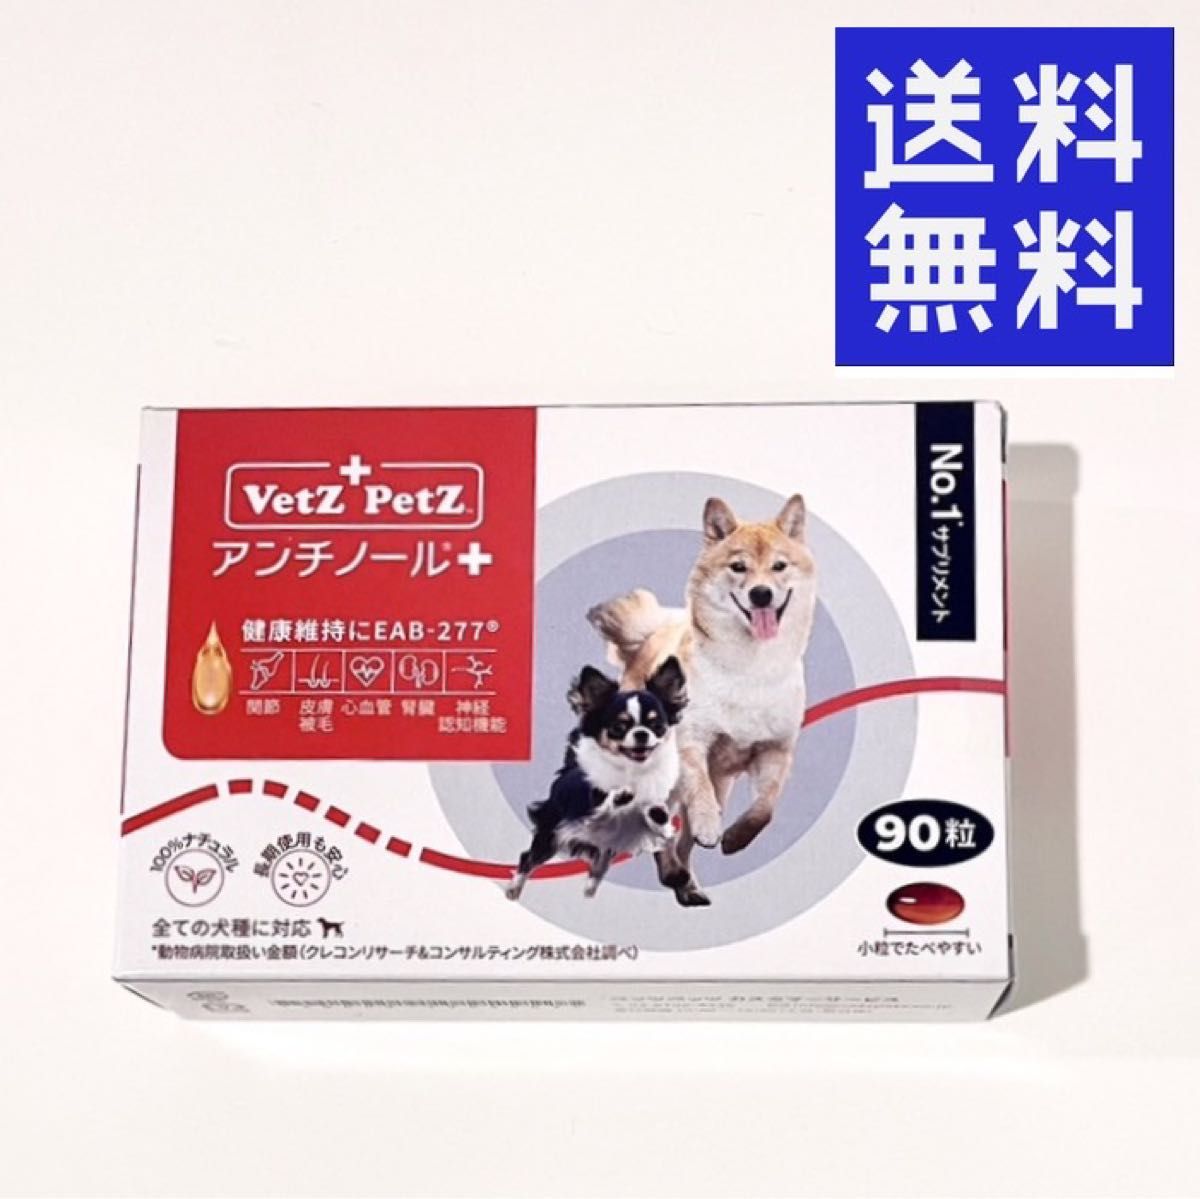 Vetz Petz アンチノール プラス 犬用 90粒×1箱 毎日発送 ベッツペッツ